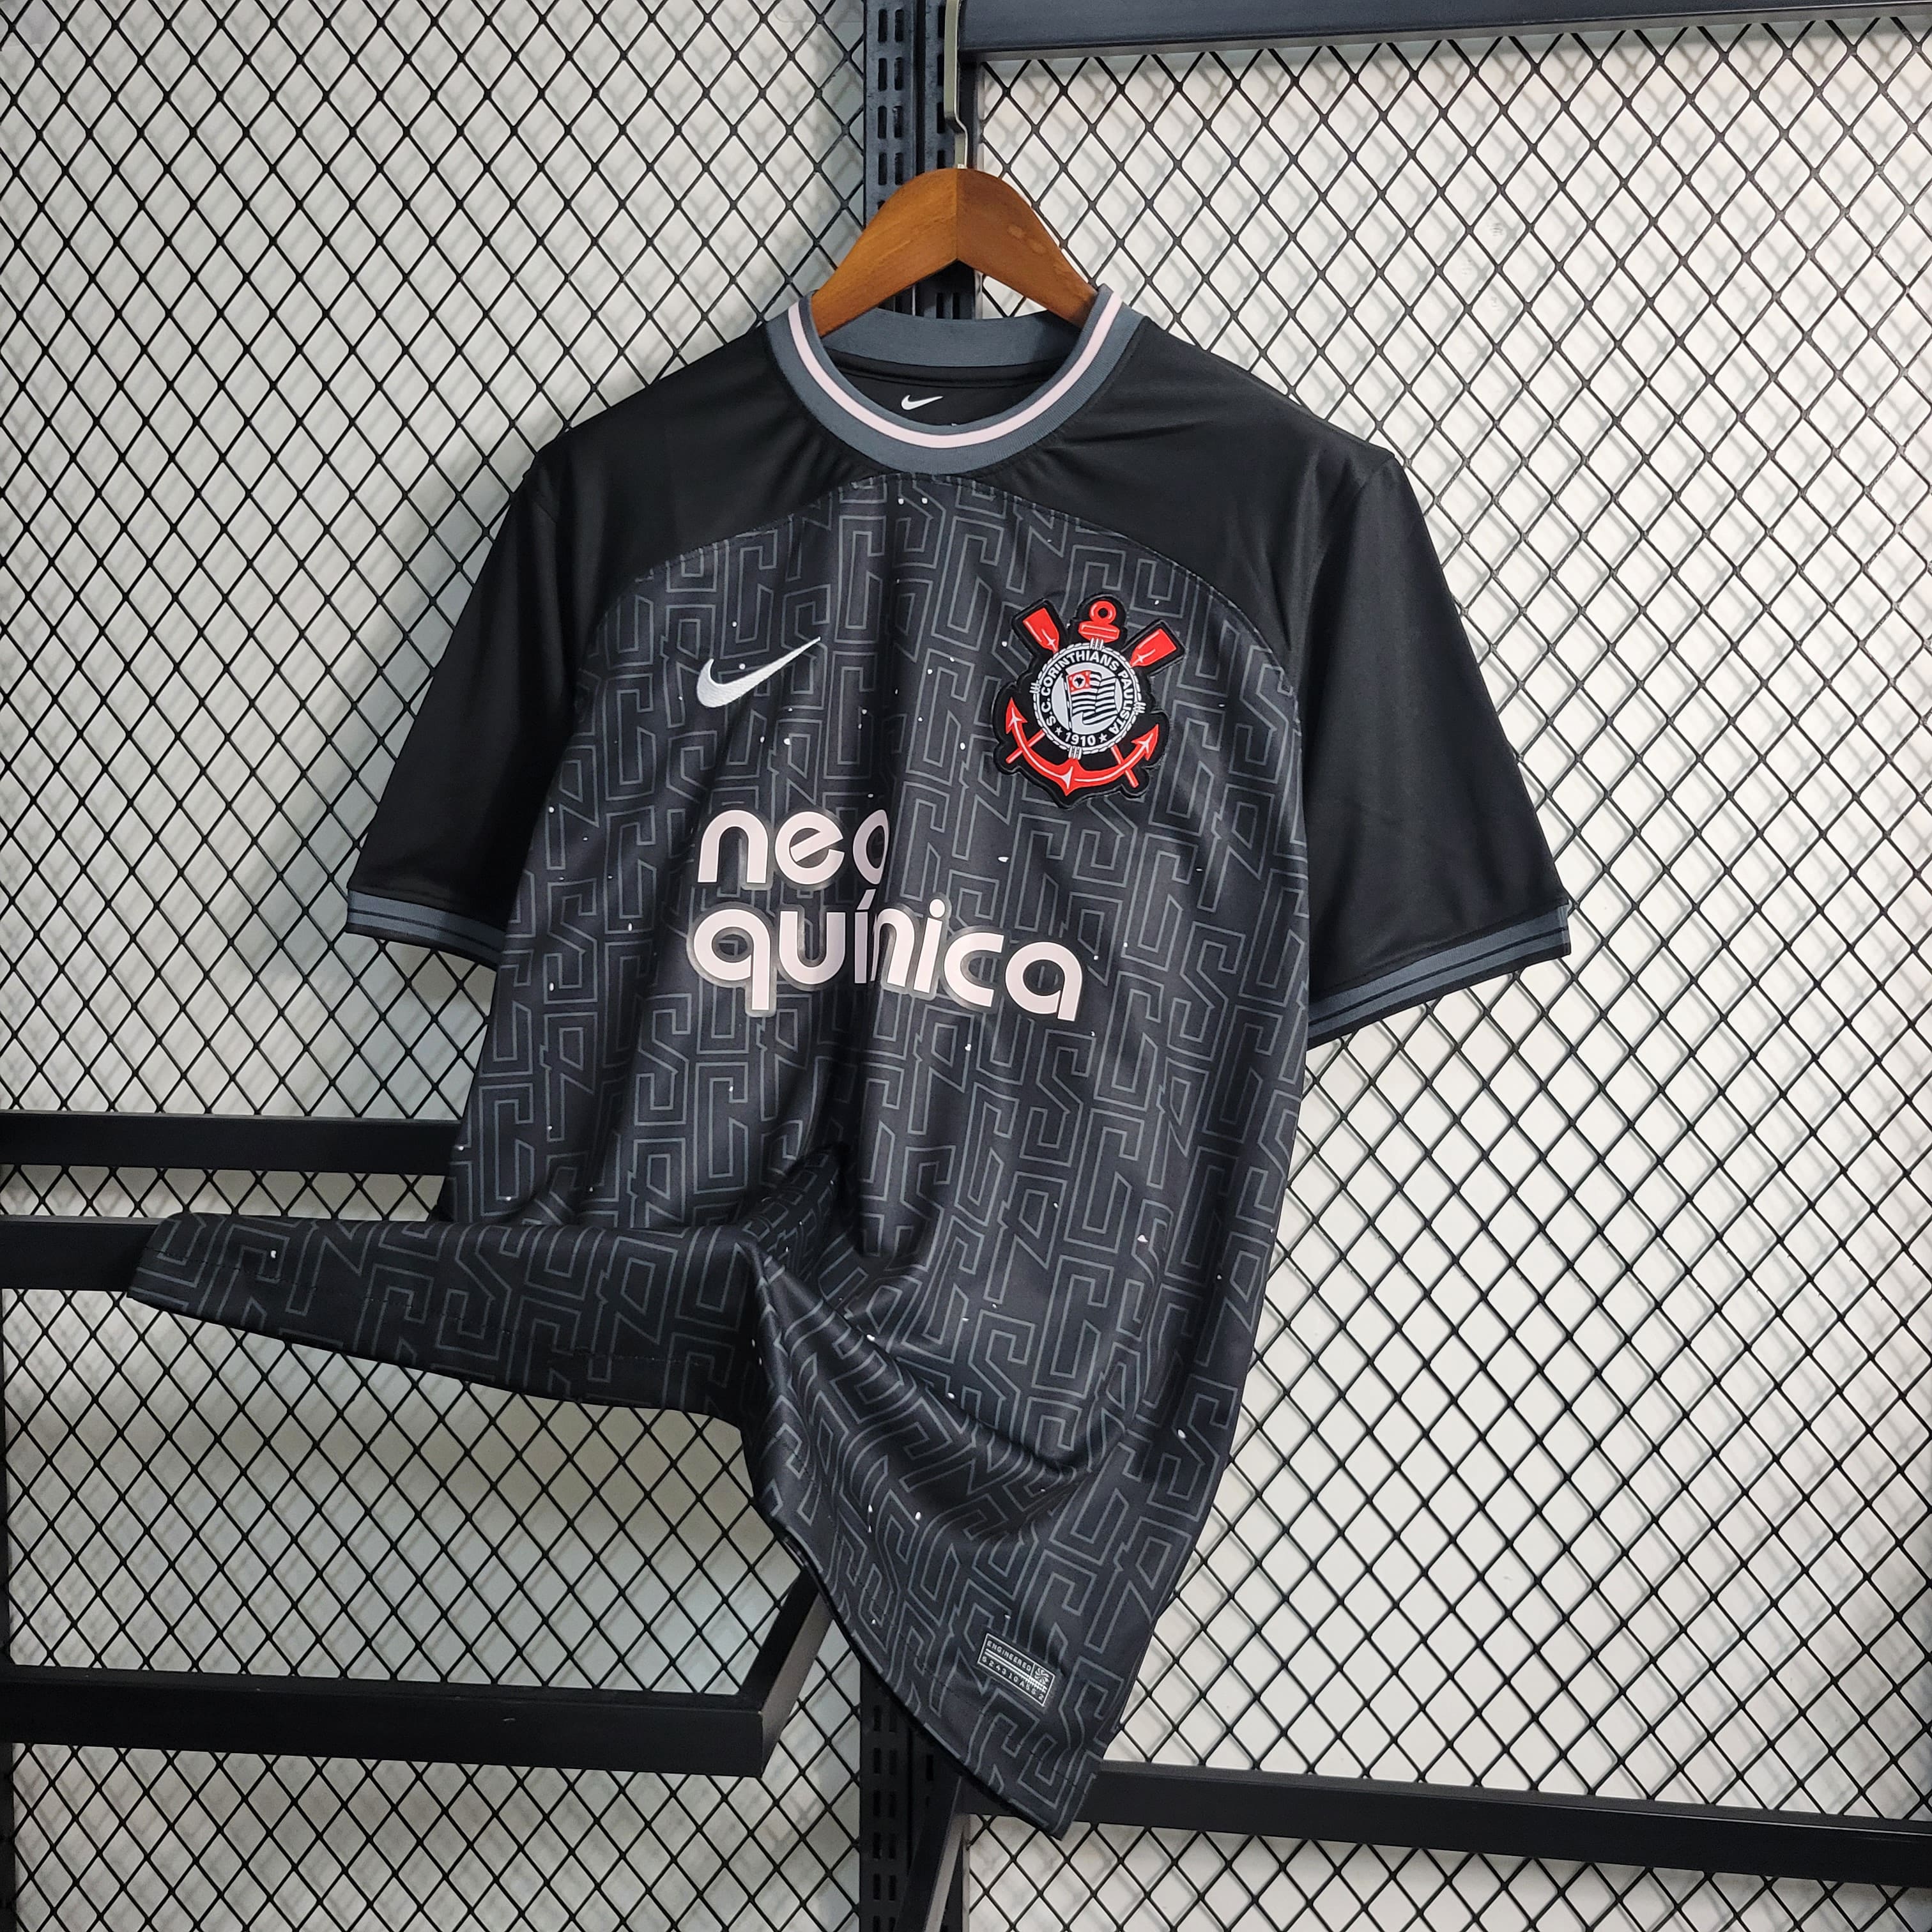 Camisa Corinthians Pré Jogo 23/24